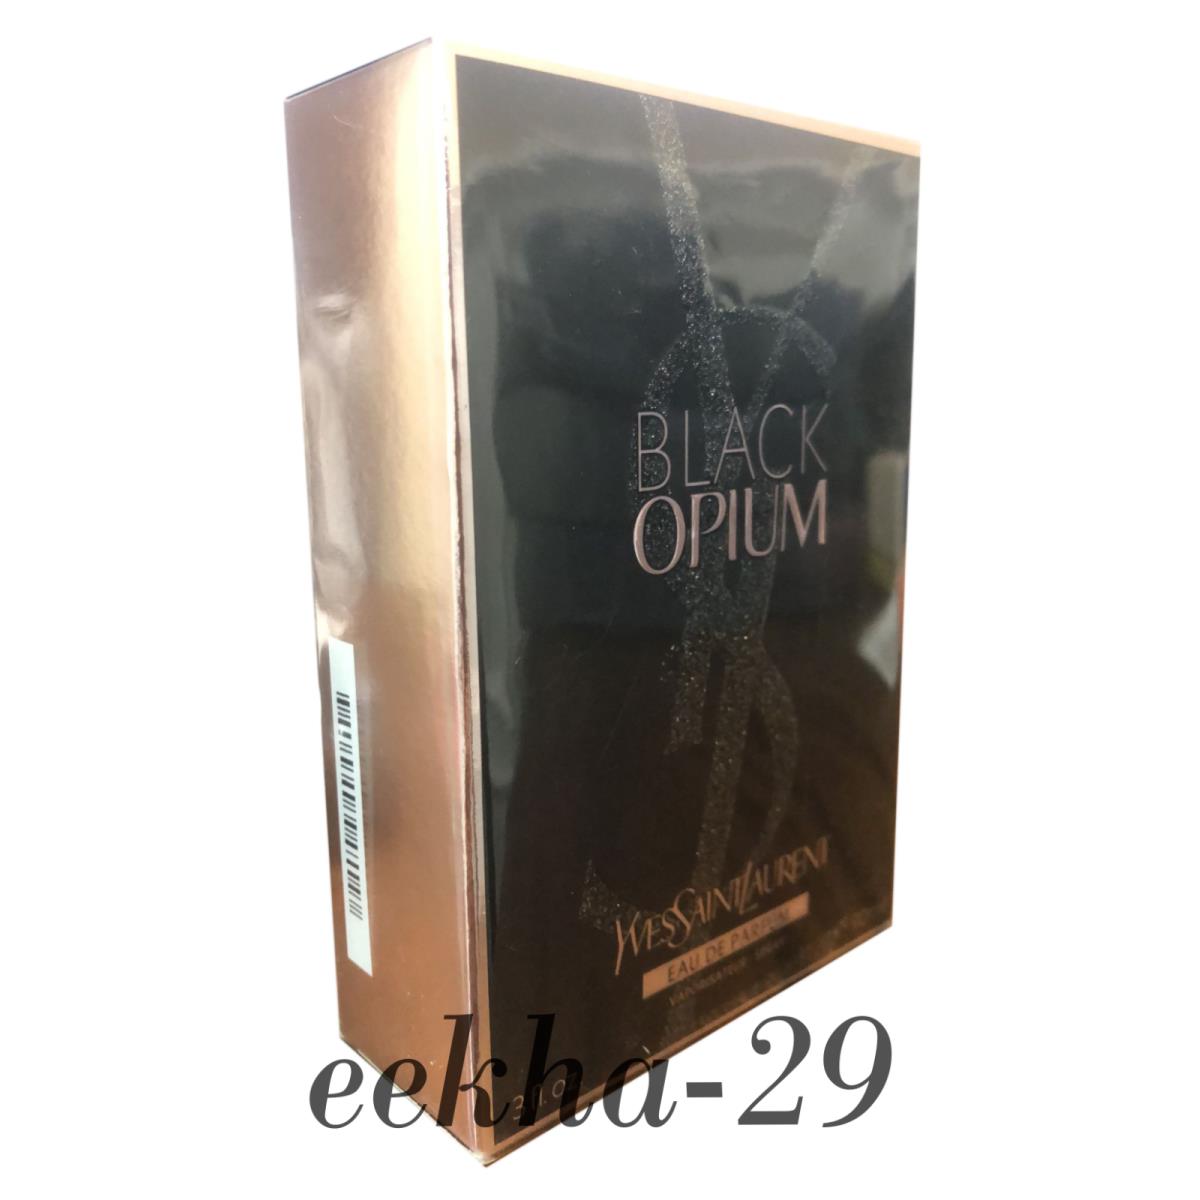 Black Opium by Yves Saint Laurent 3.0 oz Edp Perfume For Women Box